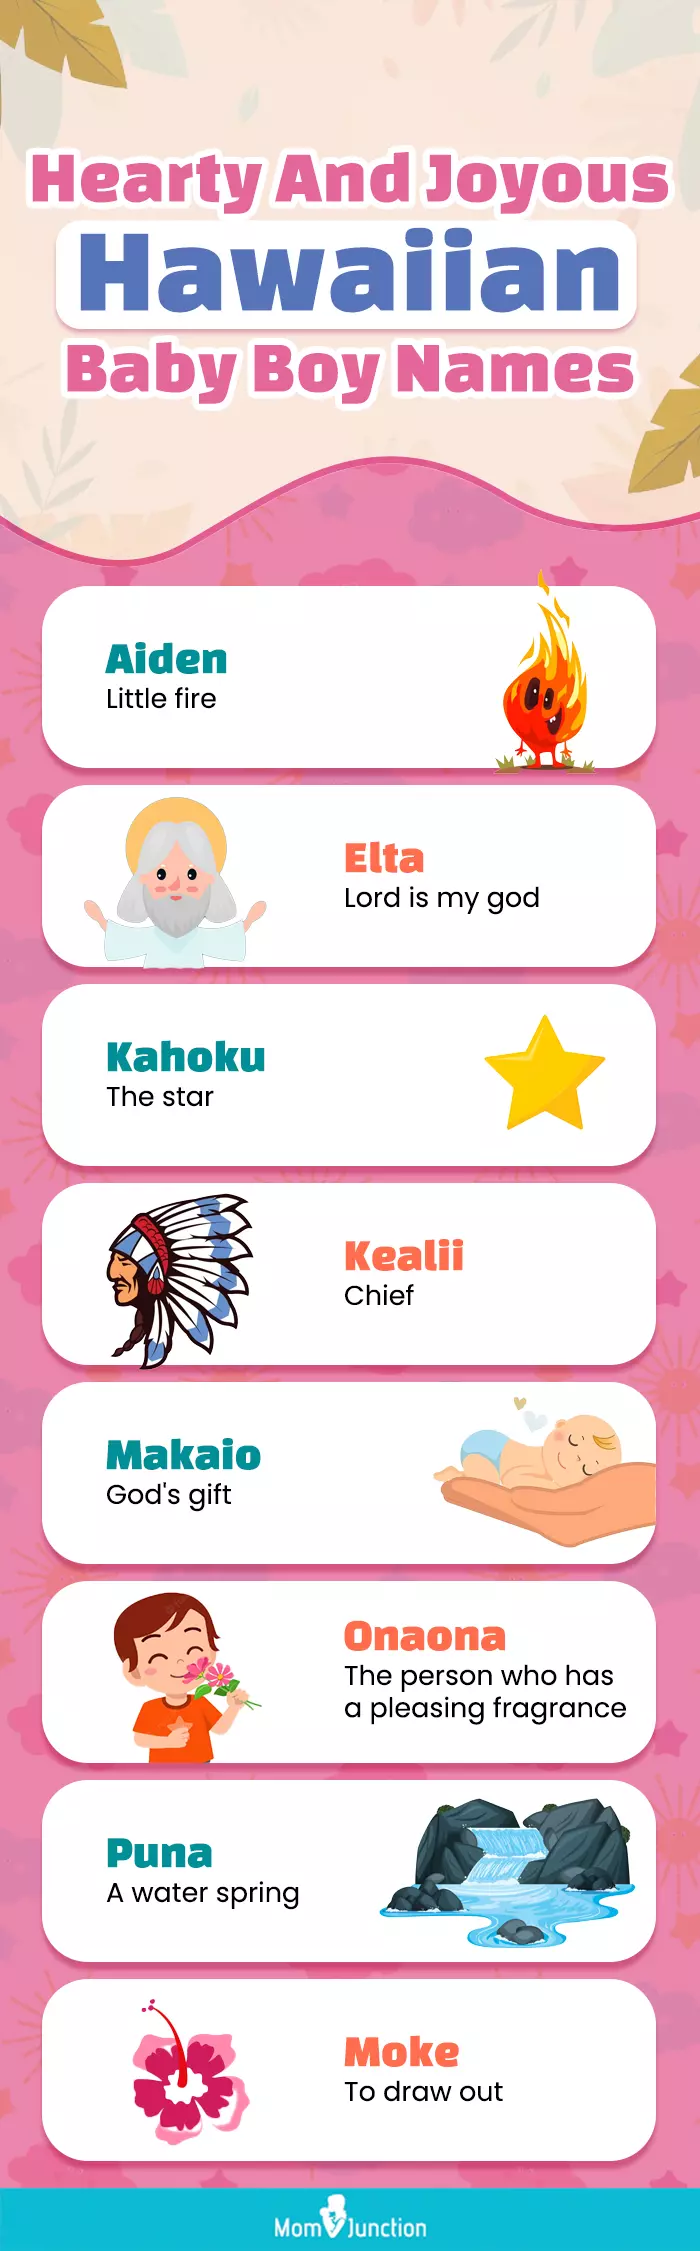 hearty and joyous hawaiian baby boy names (infographic)